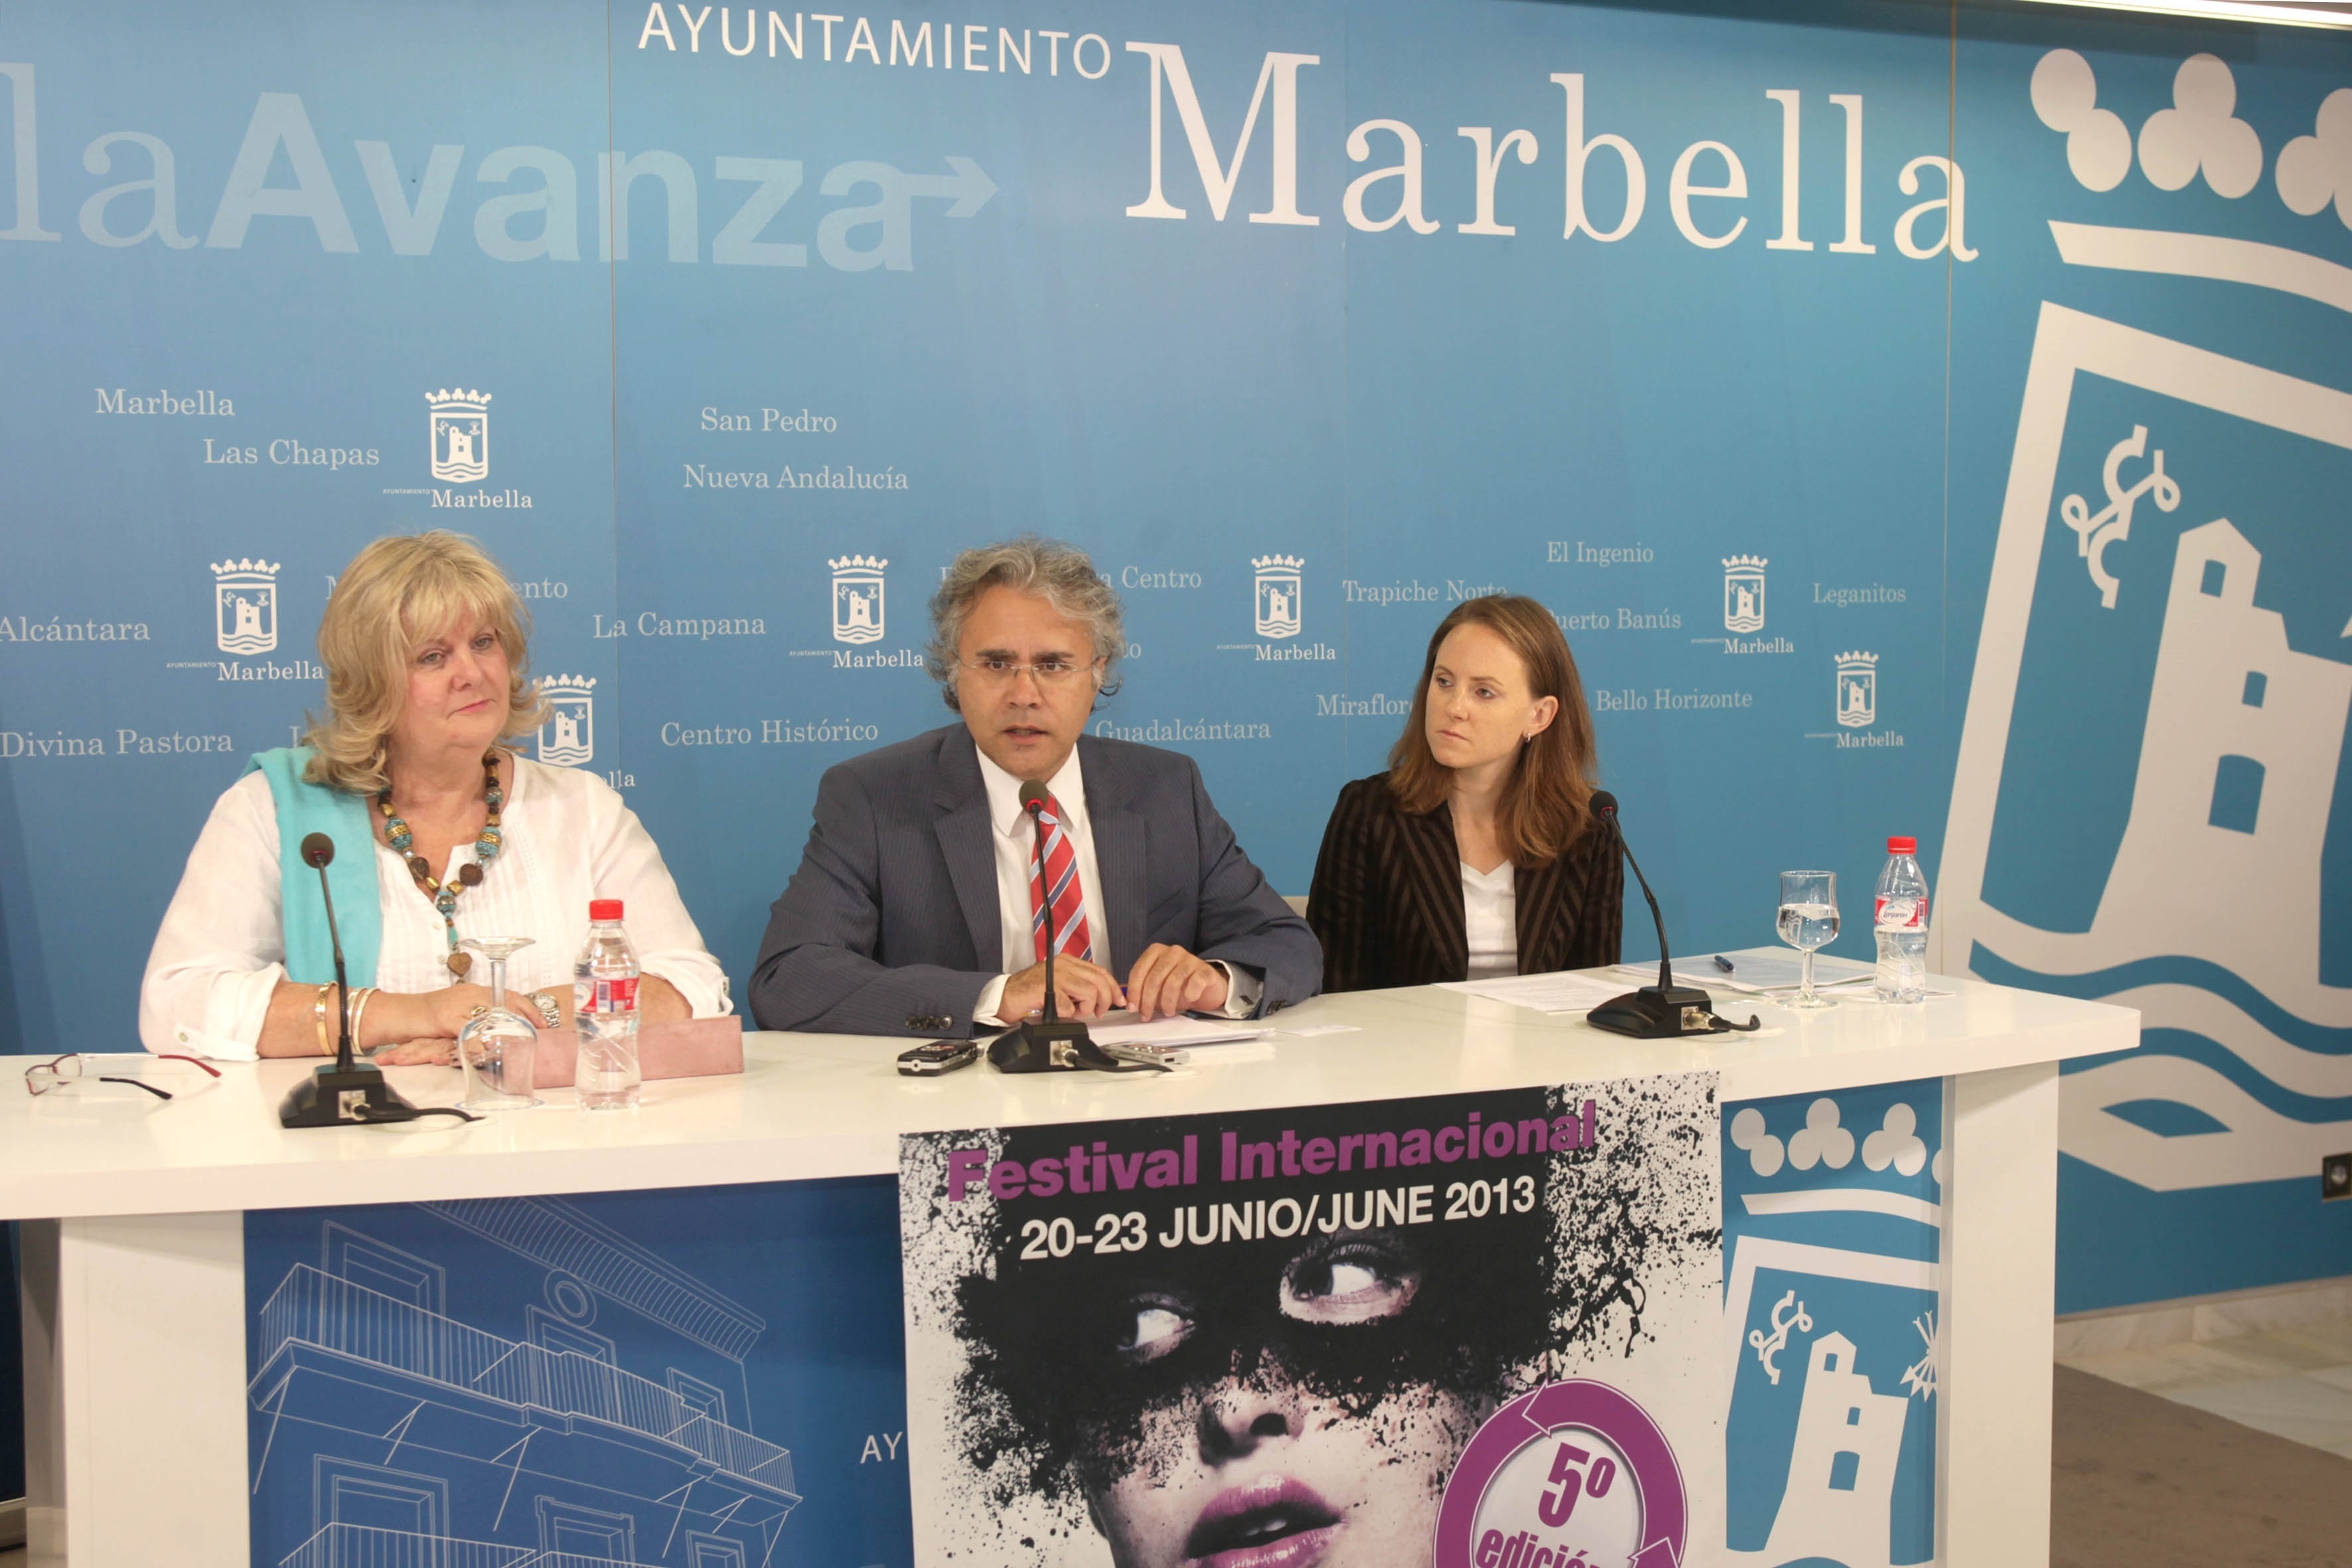 Más de 70 artistas de 20 nacionalidades se darán cita en el Festival Internacional de Arte de Marbella